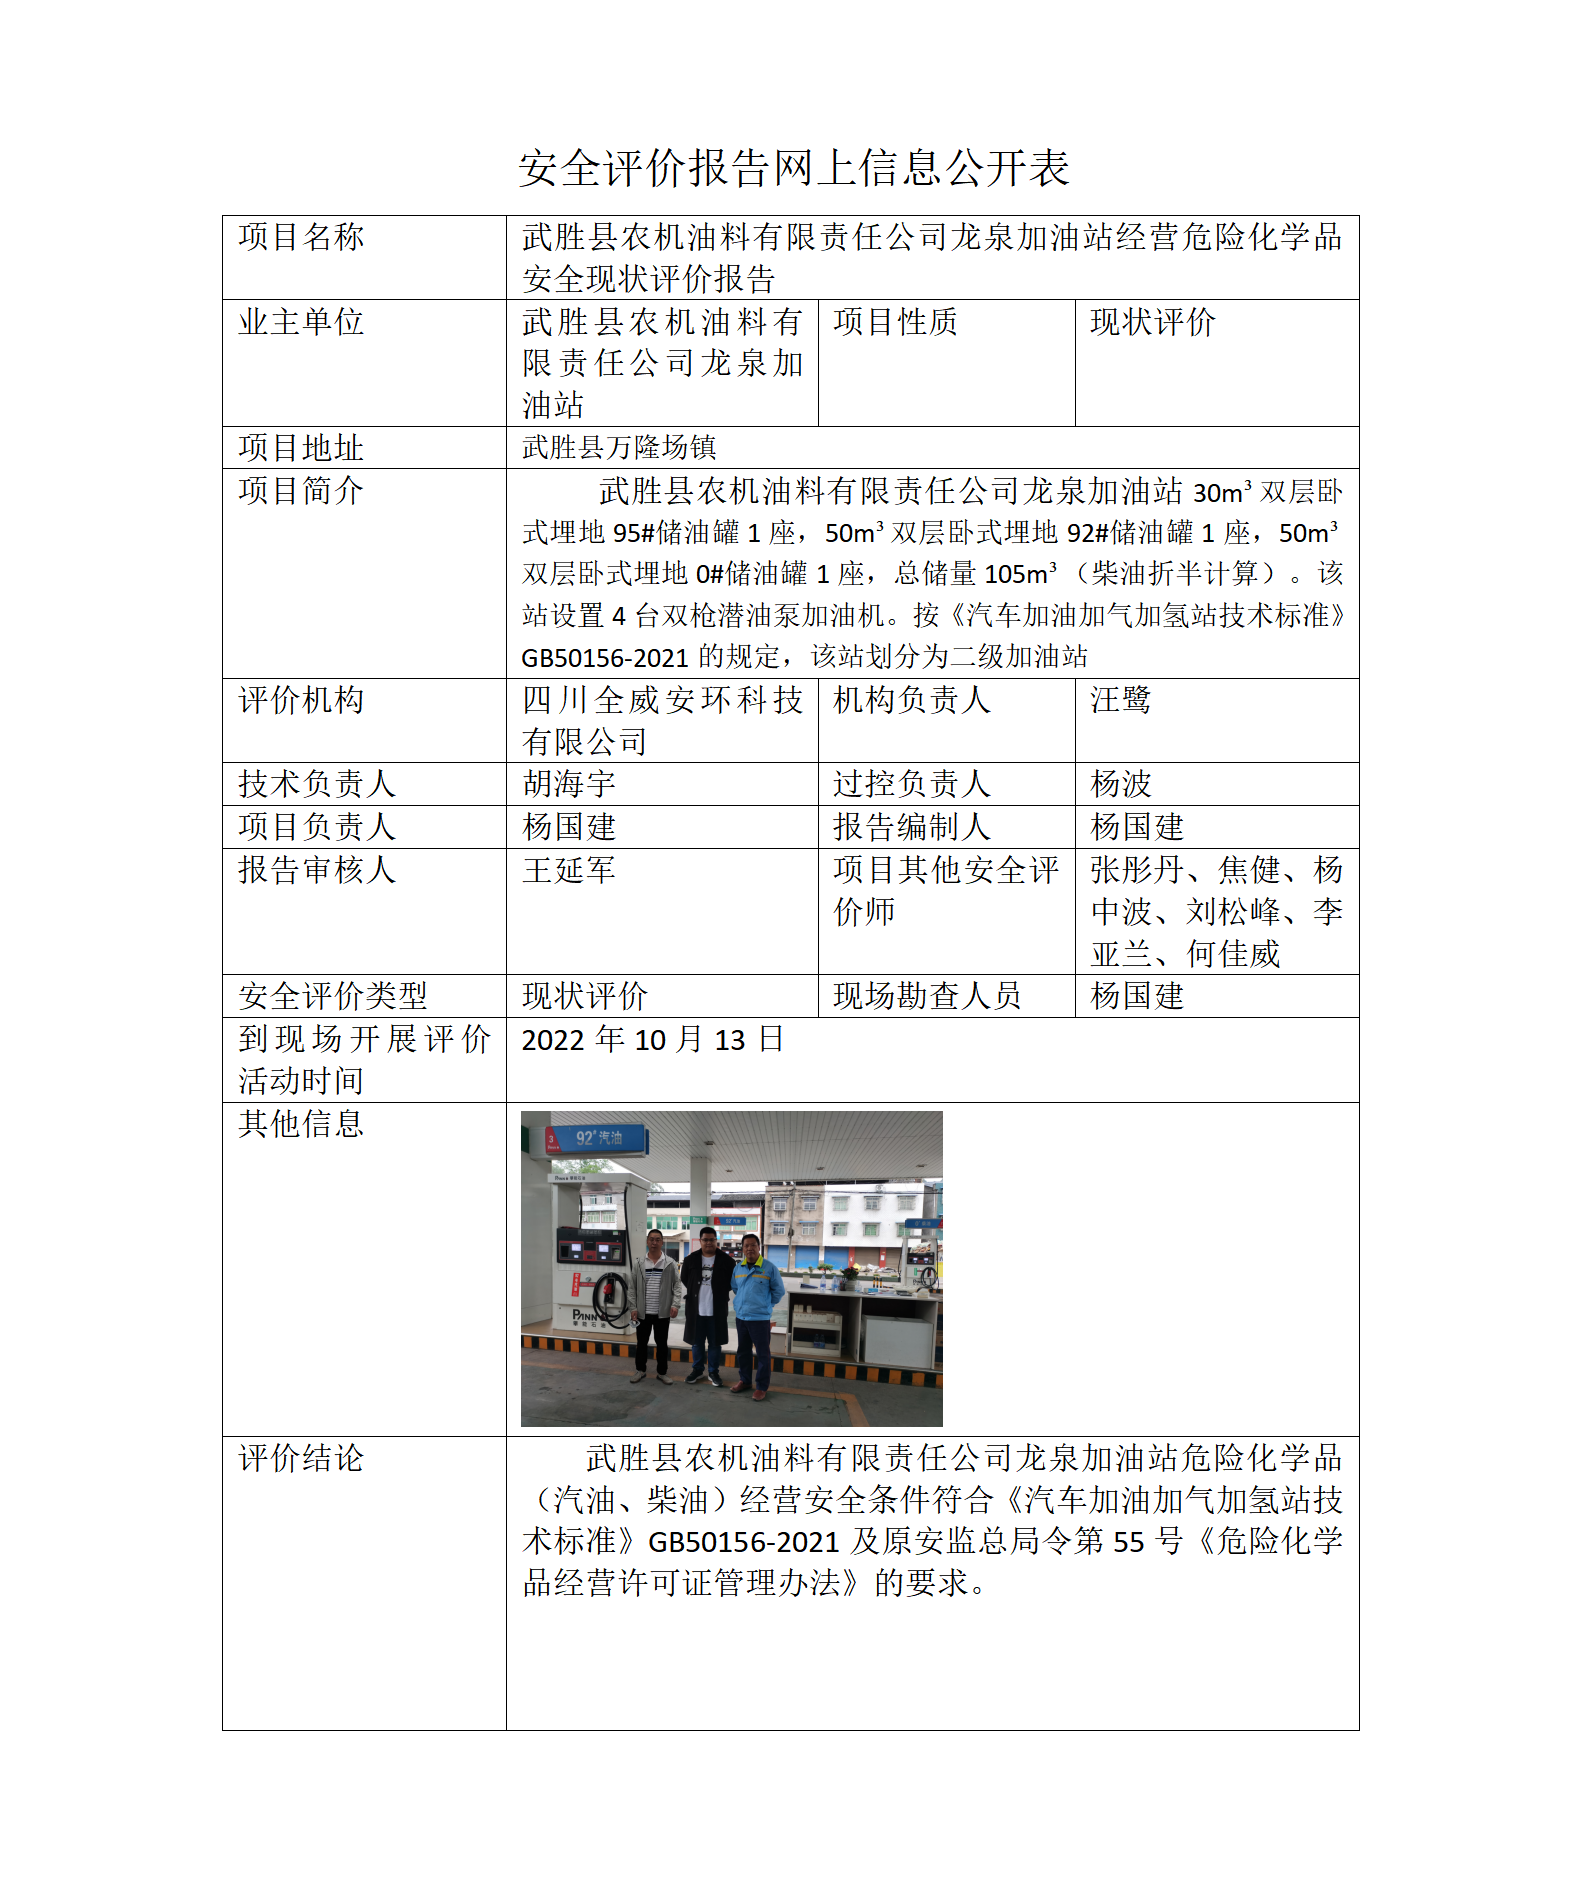 武胜县农机油料有限责任公司龙泉加油站经营危险化学品安全现状评价